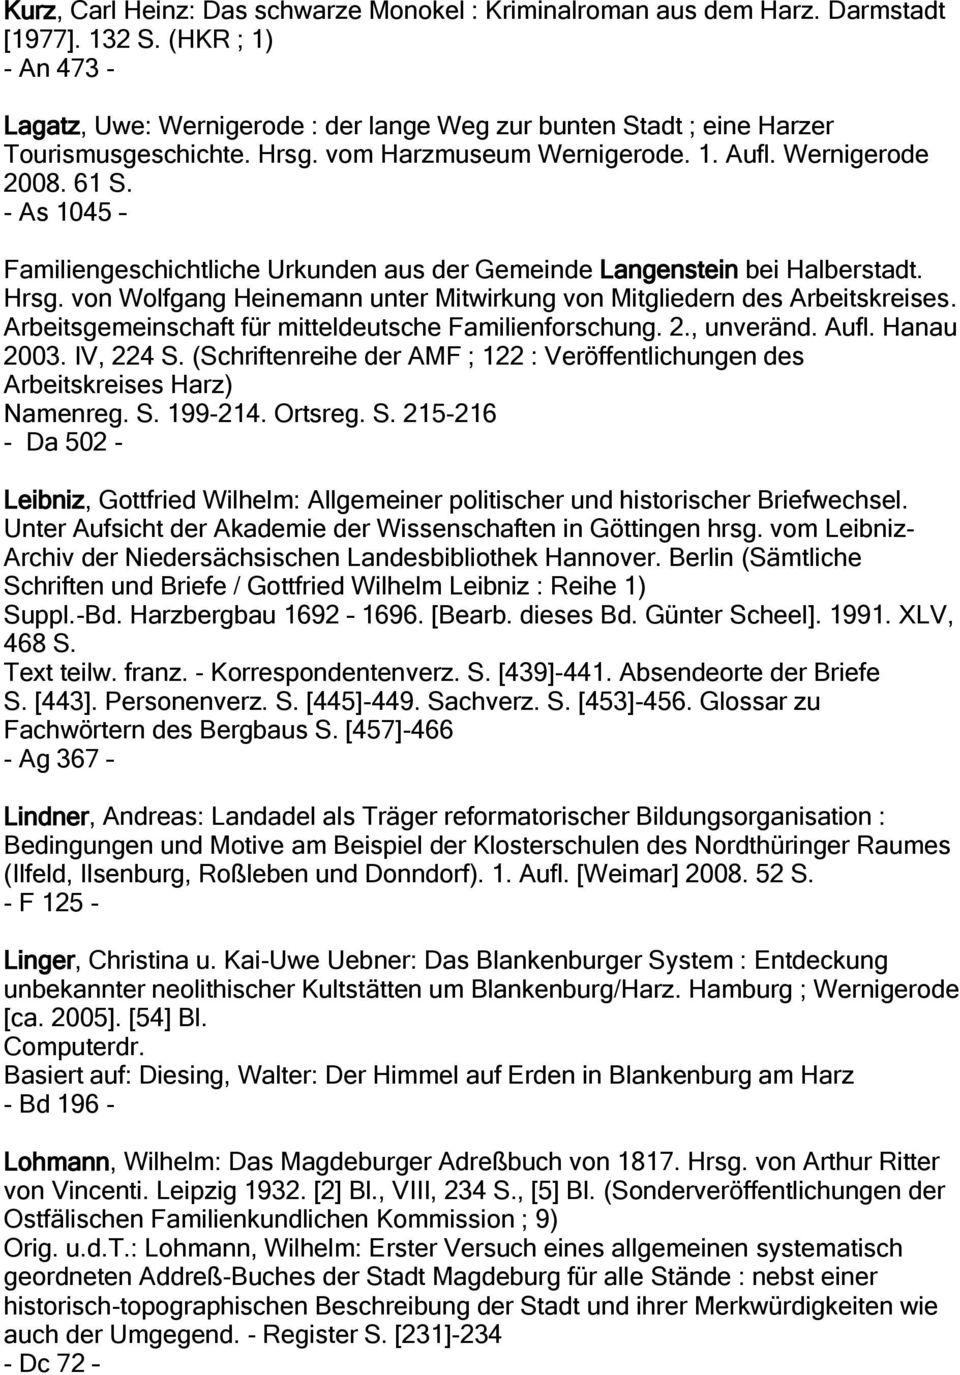 - As 1045 Familiengeschichtliche Urkunden aus der Gemeinde Langenstein bei Halberstadt. Hrsg. von Wolfgang Heinemann unter Mitwirkung von Mitgliedern des Arbeitskreises.